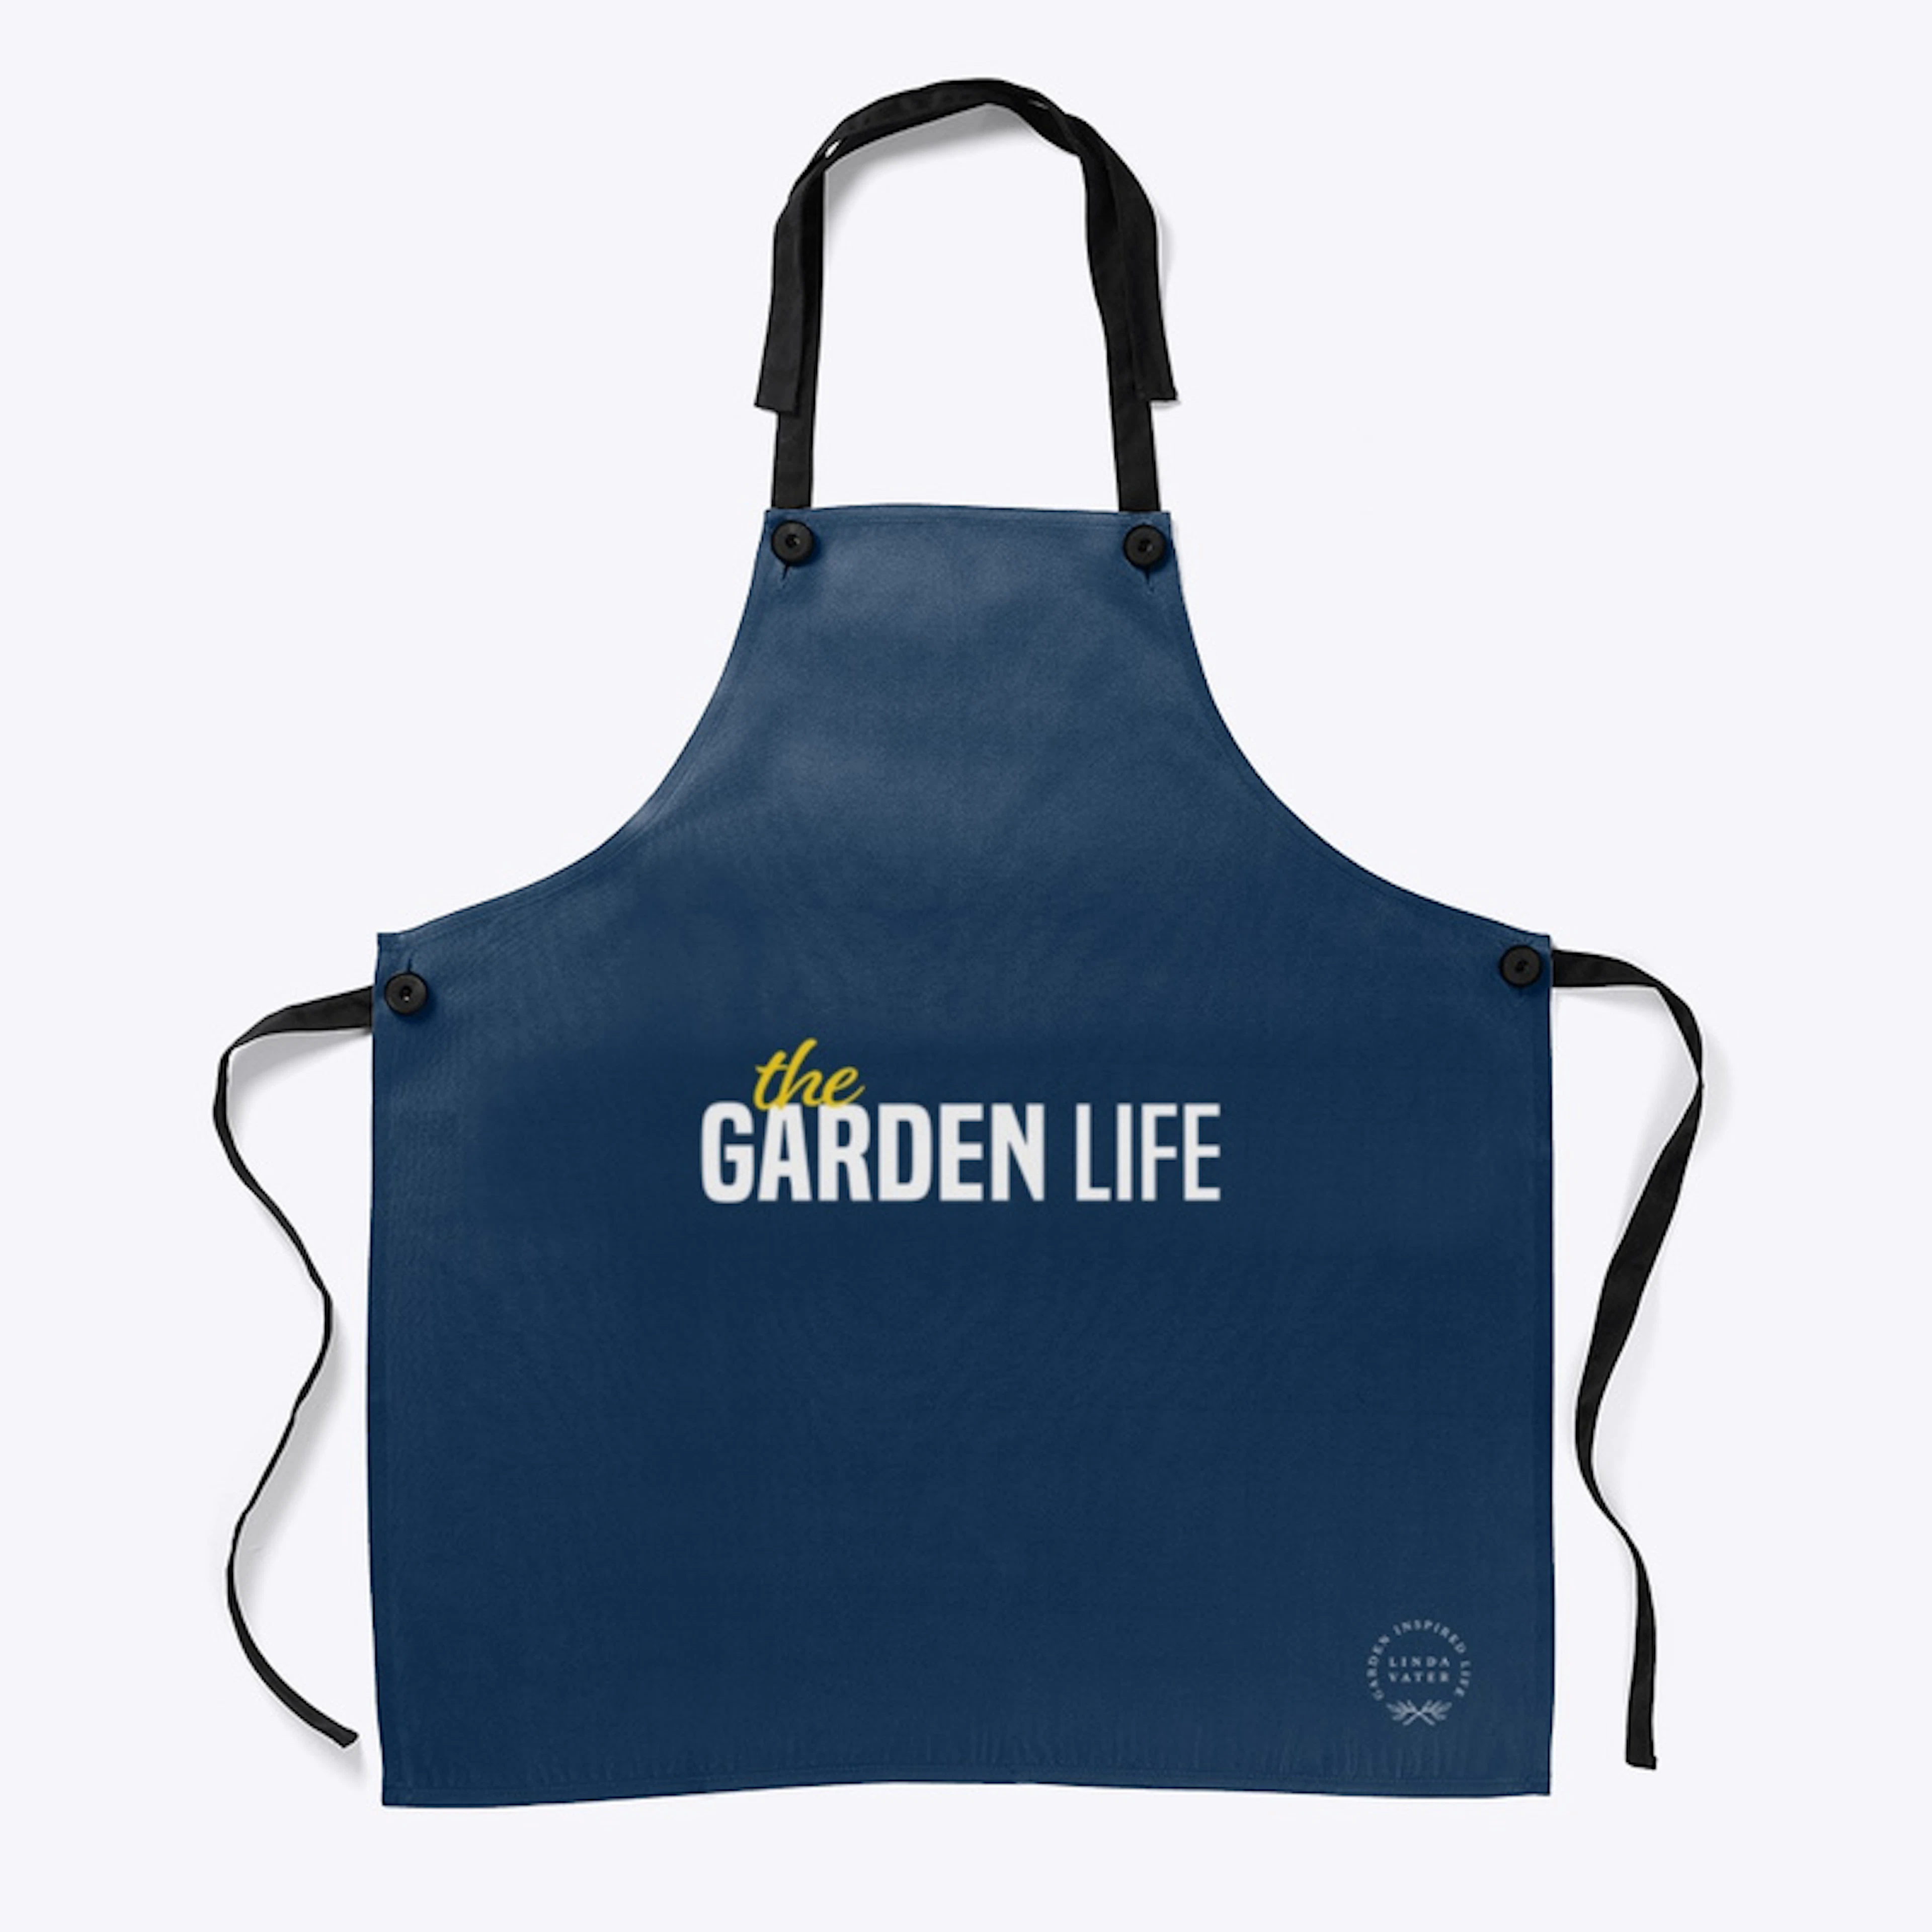 The Garden Life Official Apron